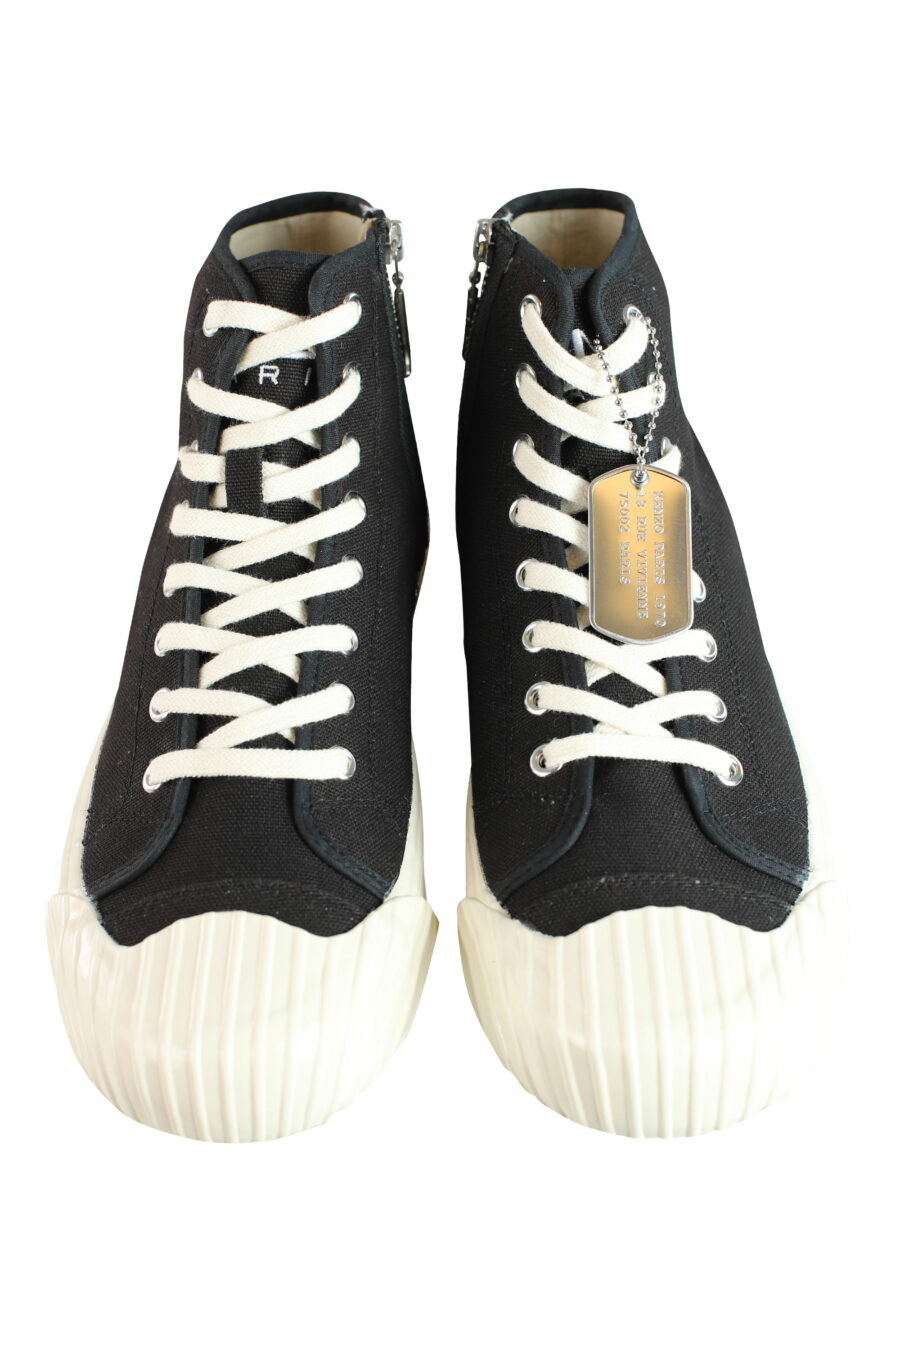 Zapatillas altas negras con logo "boke flower" - IMG 1022